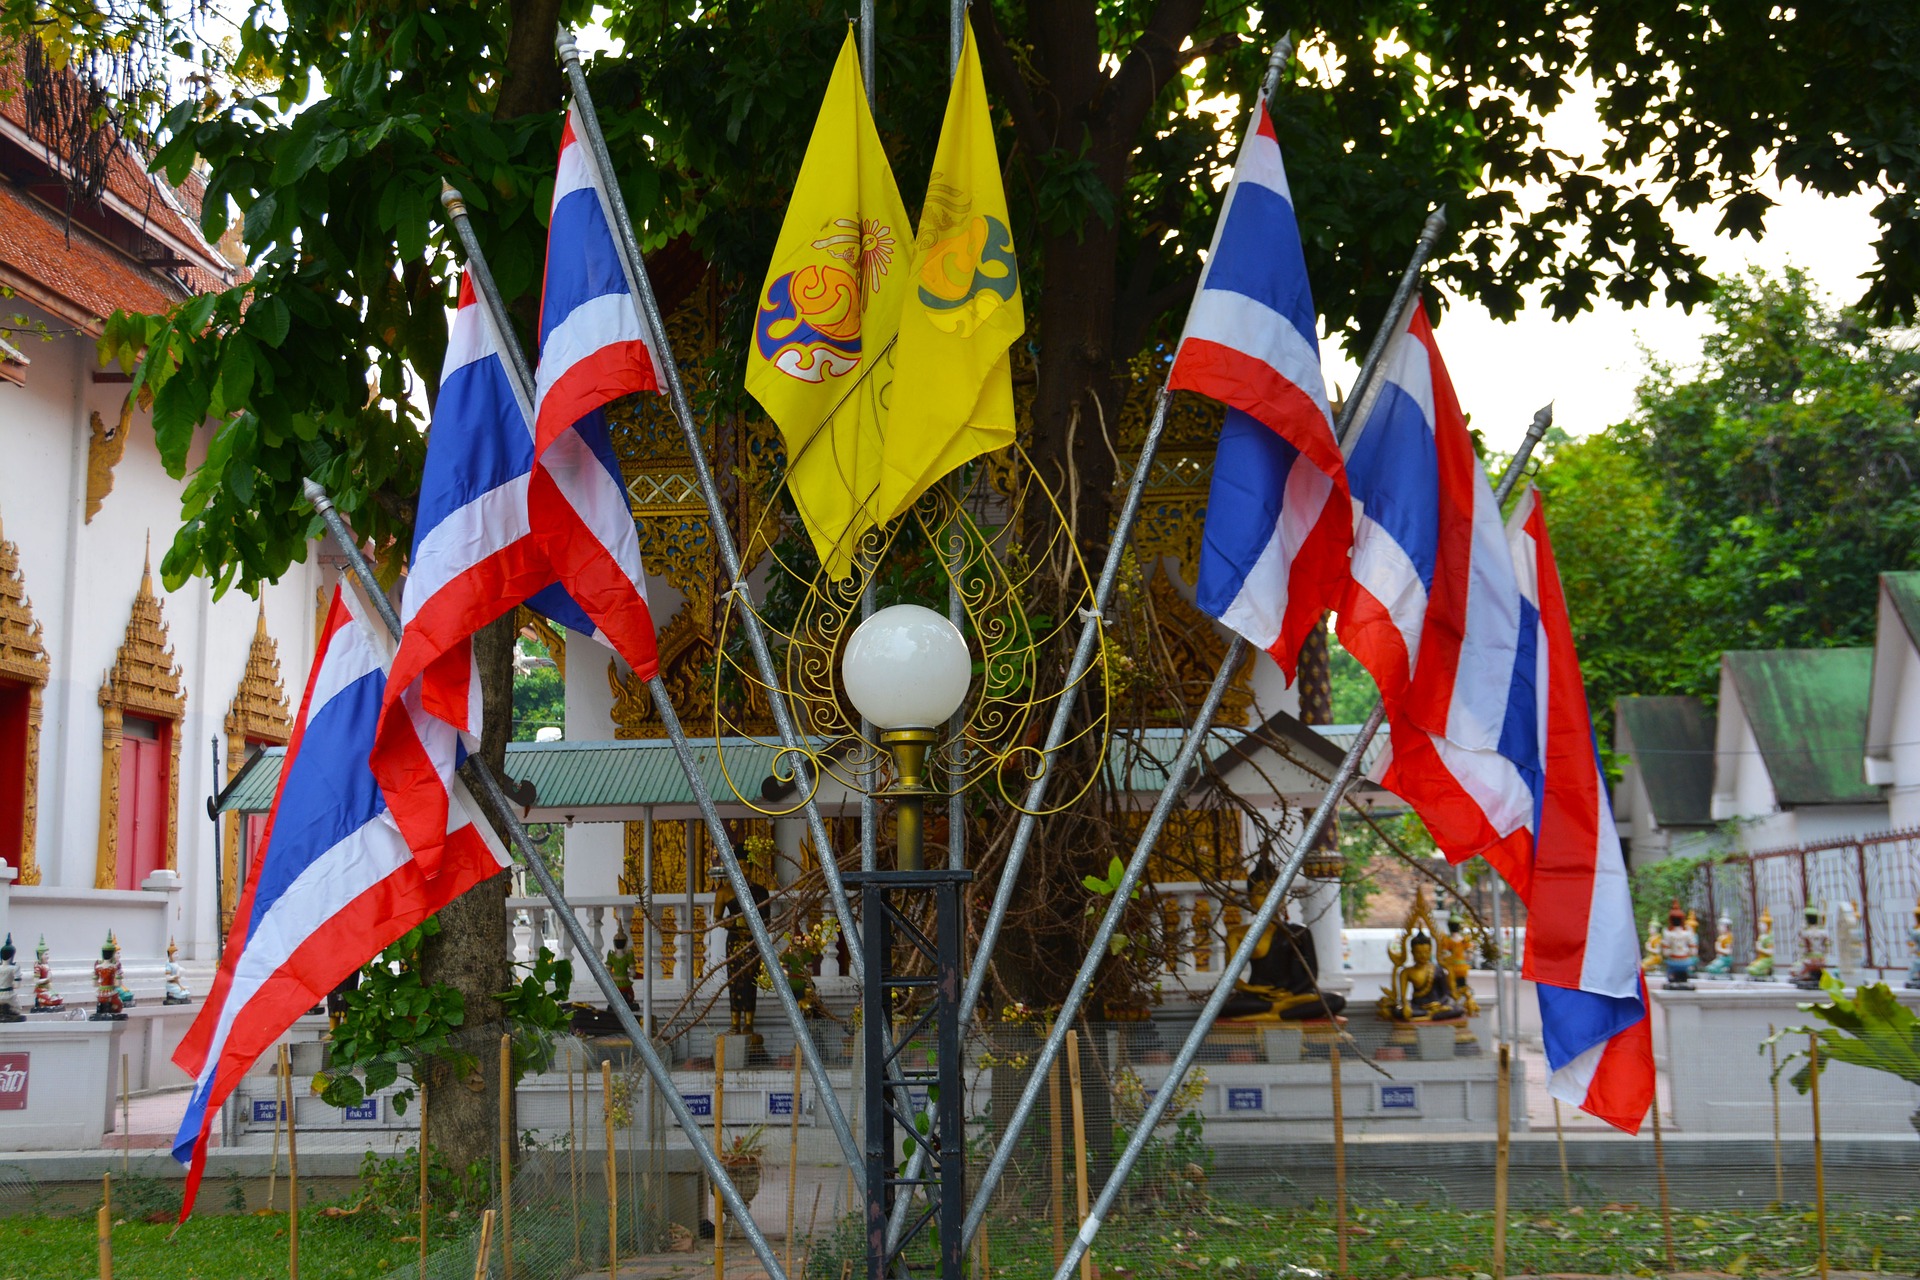 флаг и герб тайланда